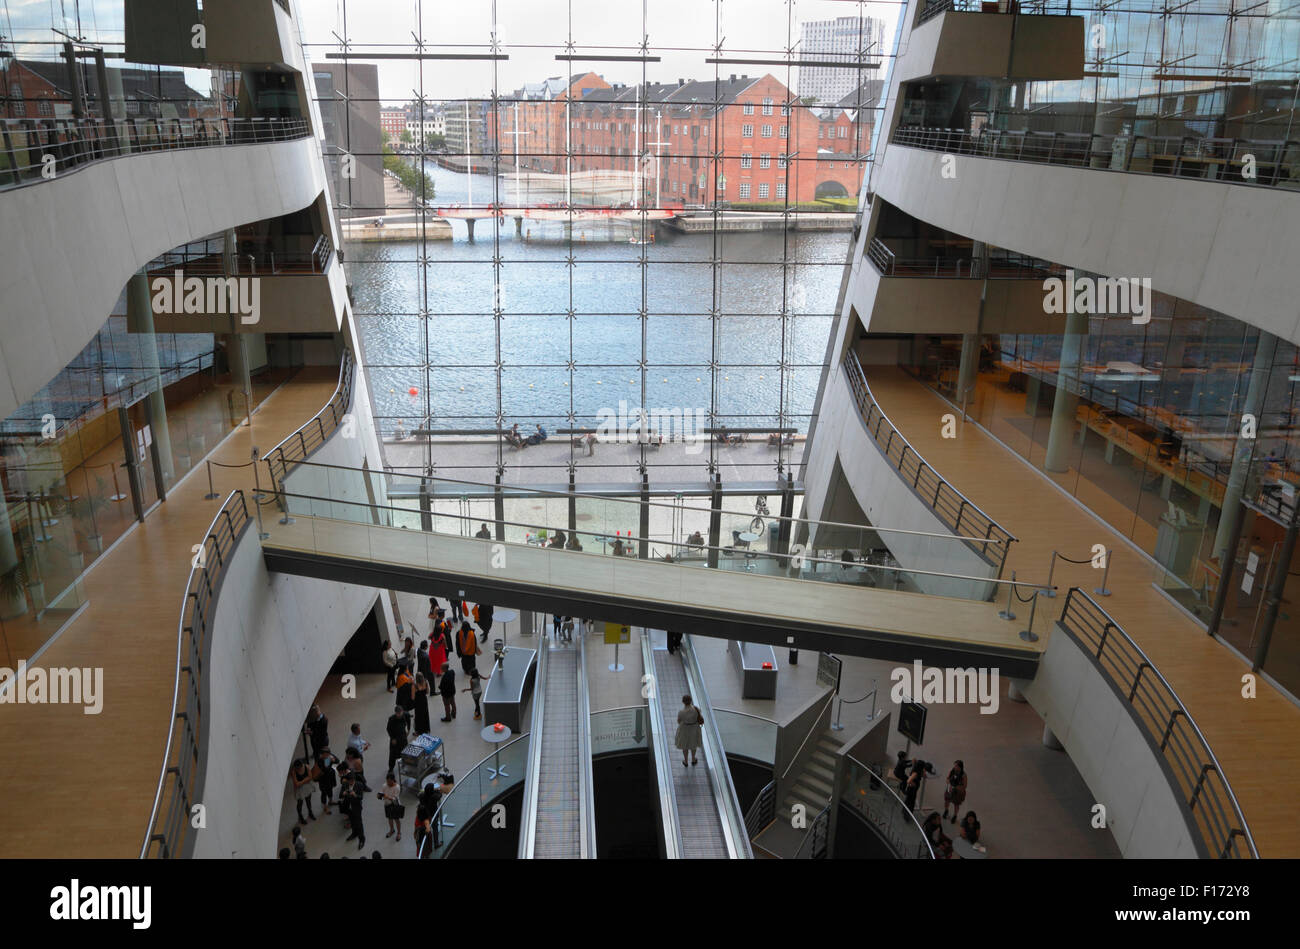 Zentralen Foyer in der königlichen Bibliothek in Black Diamond, Den Sorte Diamant, in Kopenhagen. Interieur und Blick auf den Hafen von Kopenhagen durch Fassade. Stockfoto